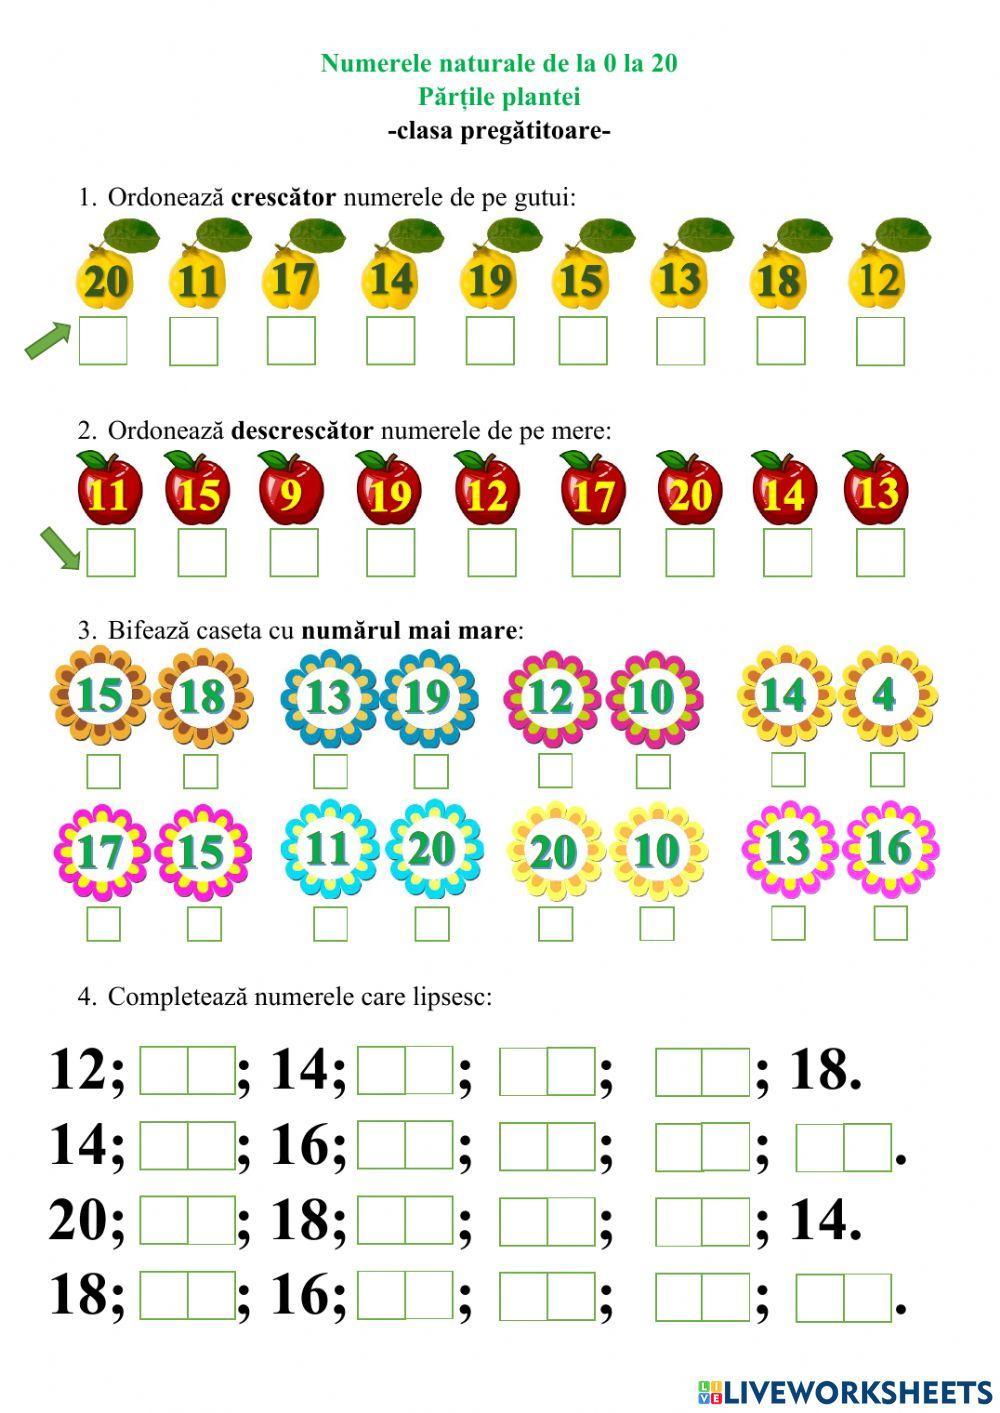 Numerele naturale de la 0 la 20. Părțile plantei